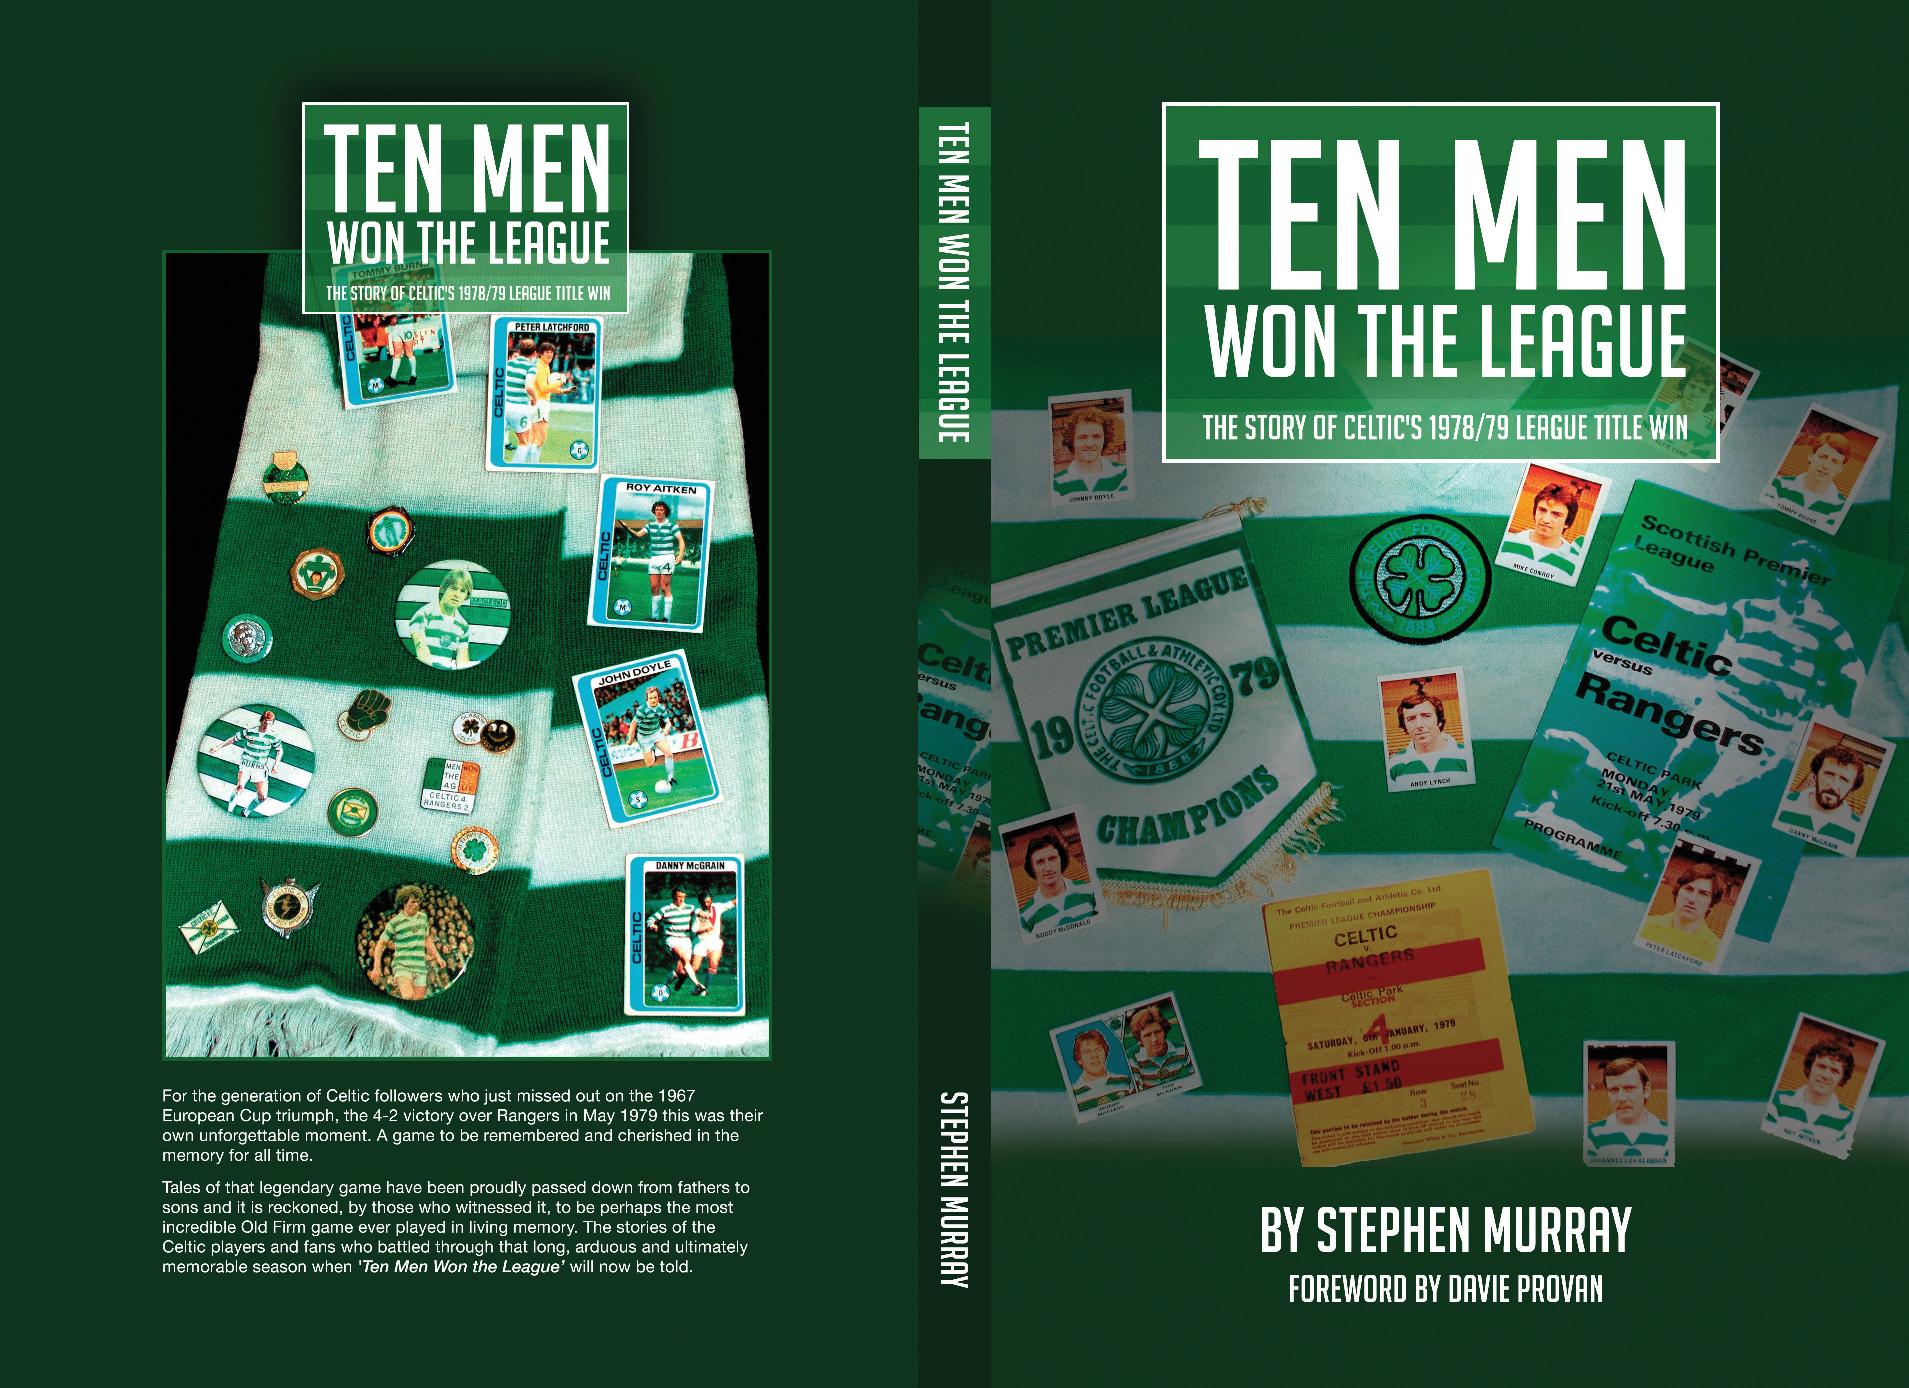 TEN MEN WON THE LEAGUE – THE LEGEND LIVES ON